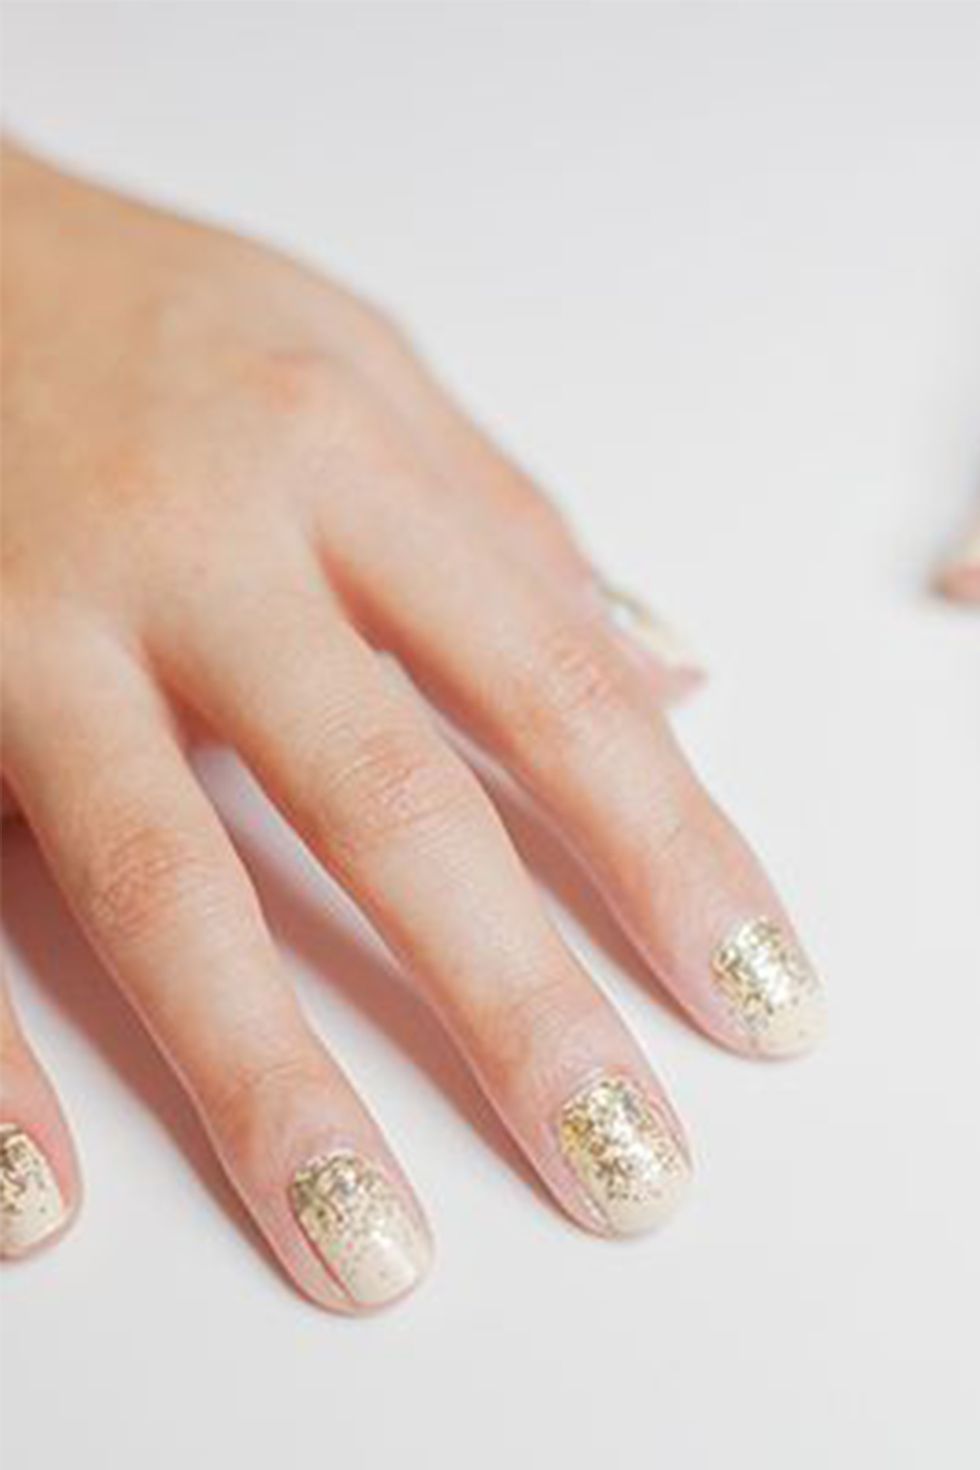 8 glitter nail designs